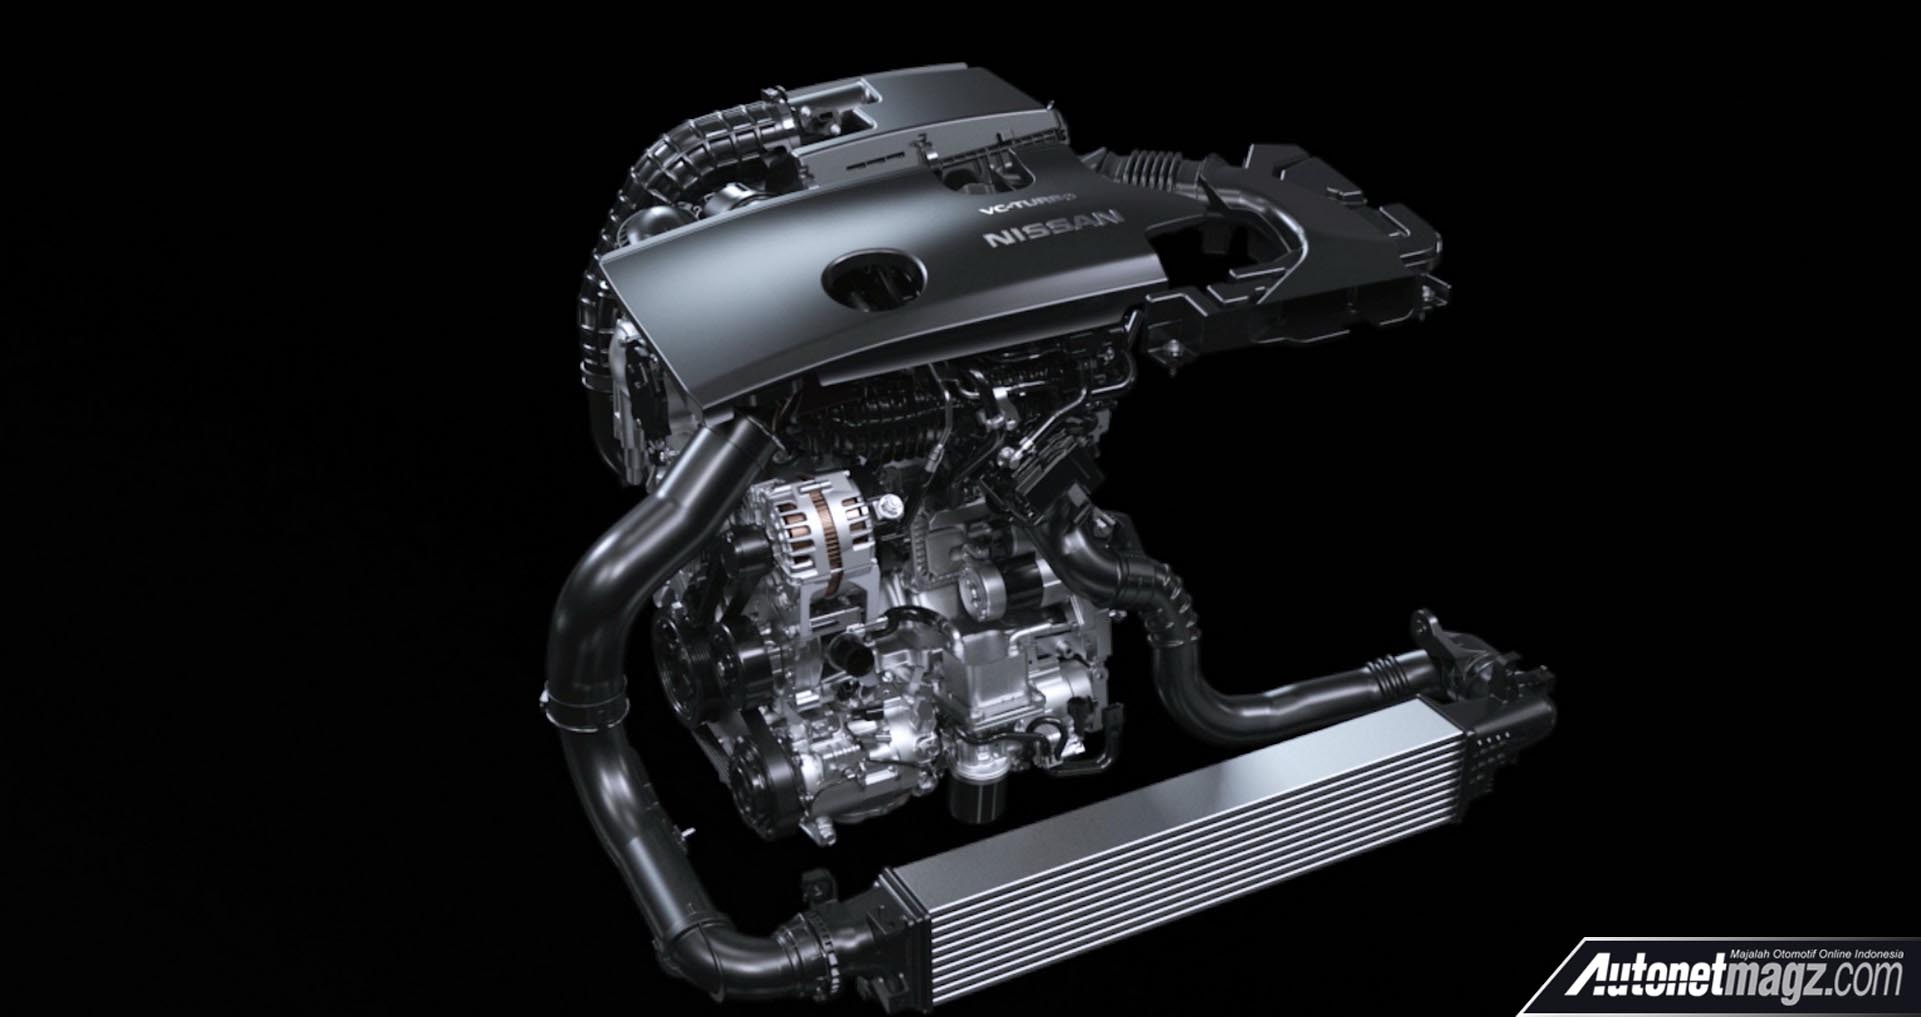 Berita, Nissan Altima 2019 mesin turbo: Nissan Altima 2019 Hadir dengan Mesin Turbo dan AWD